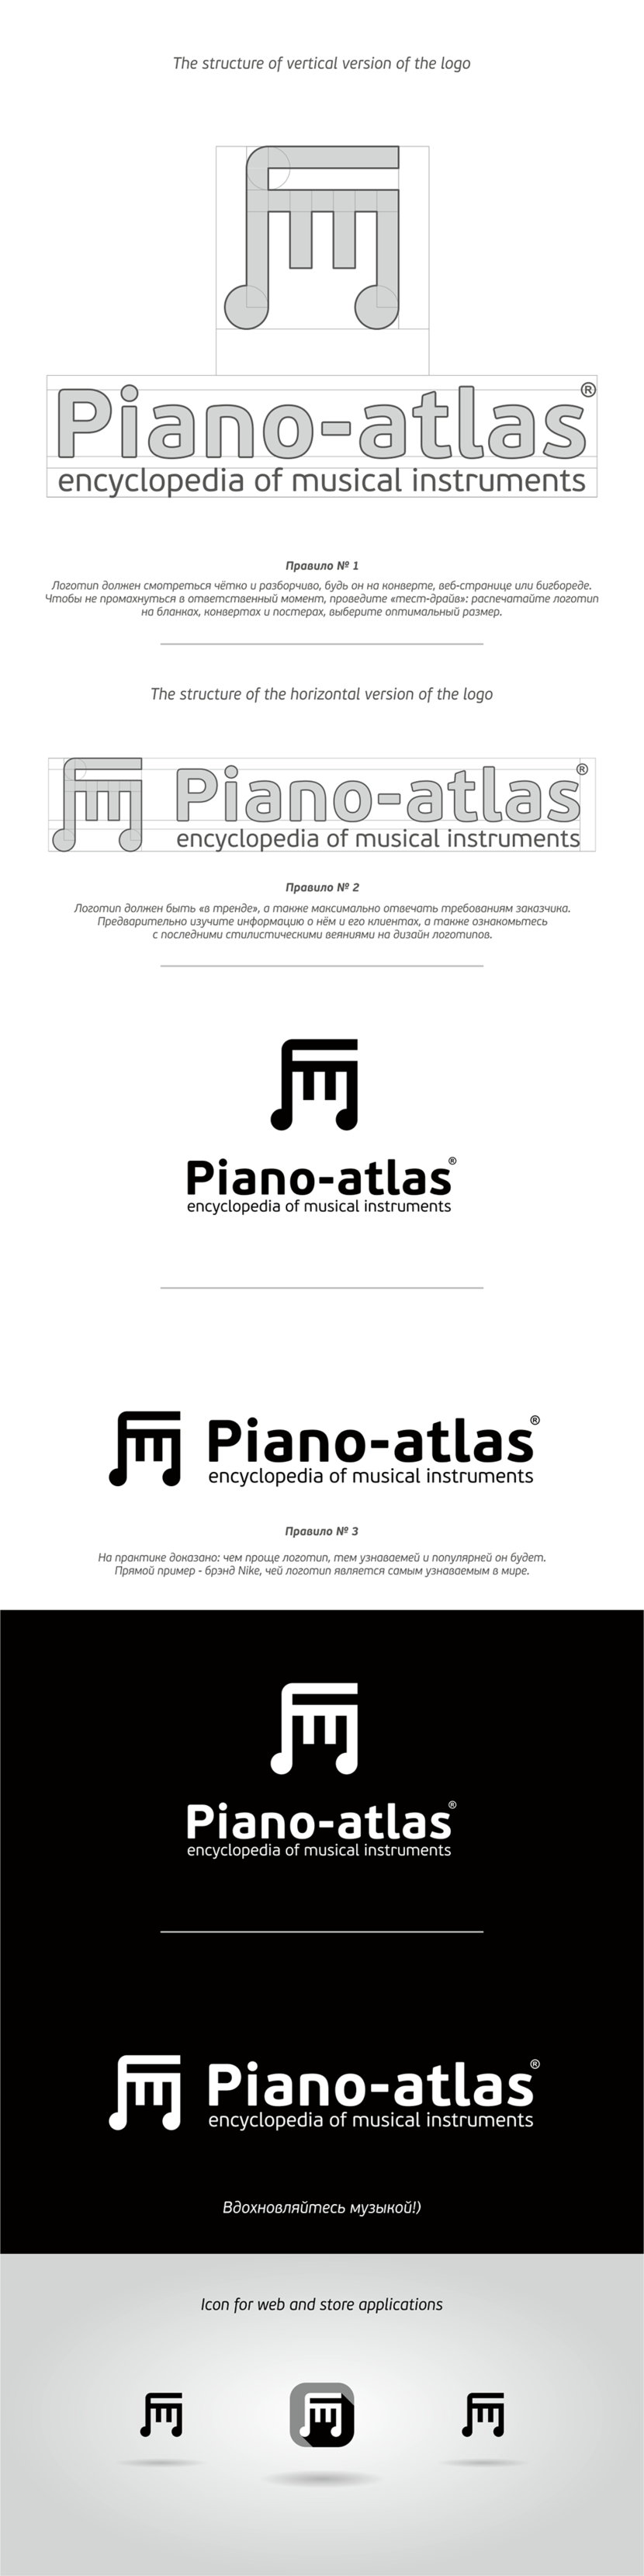 Если позволите, некоторые рекомендации и от нас) - Конкурс для проекта piano-atlas.ru